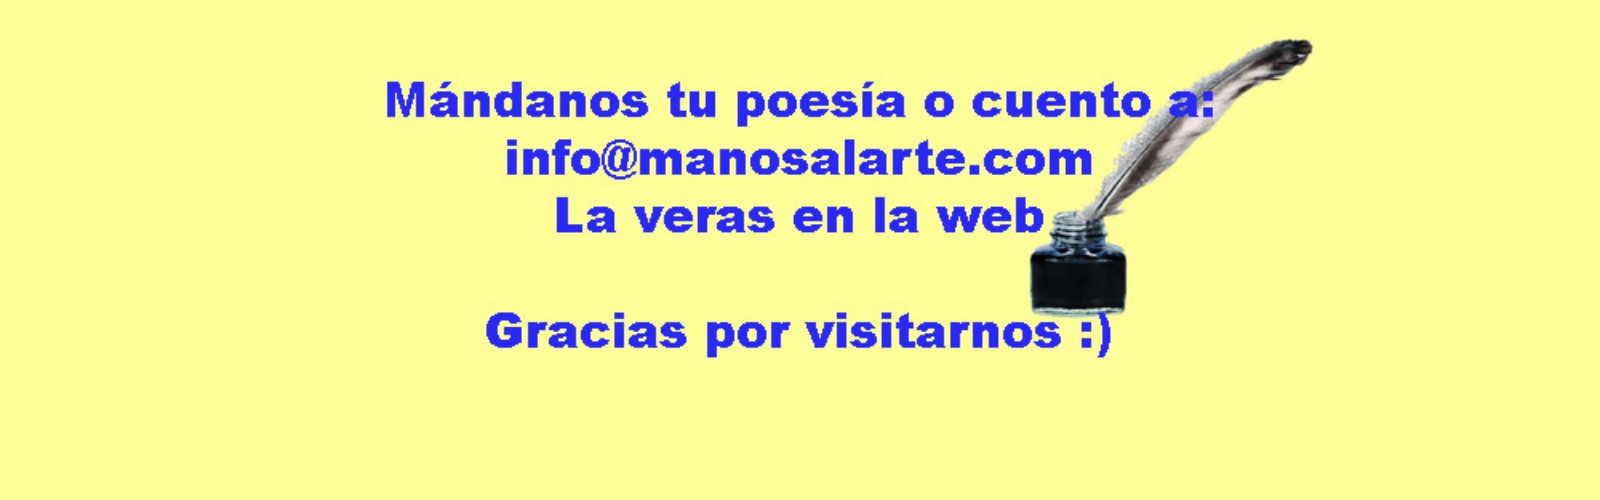 info@manosalarte.com